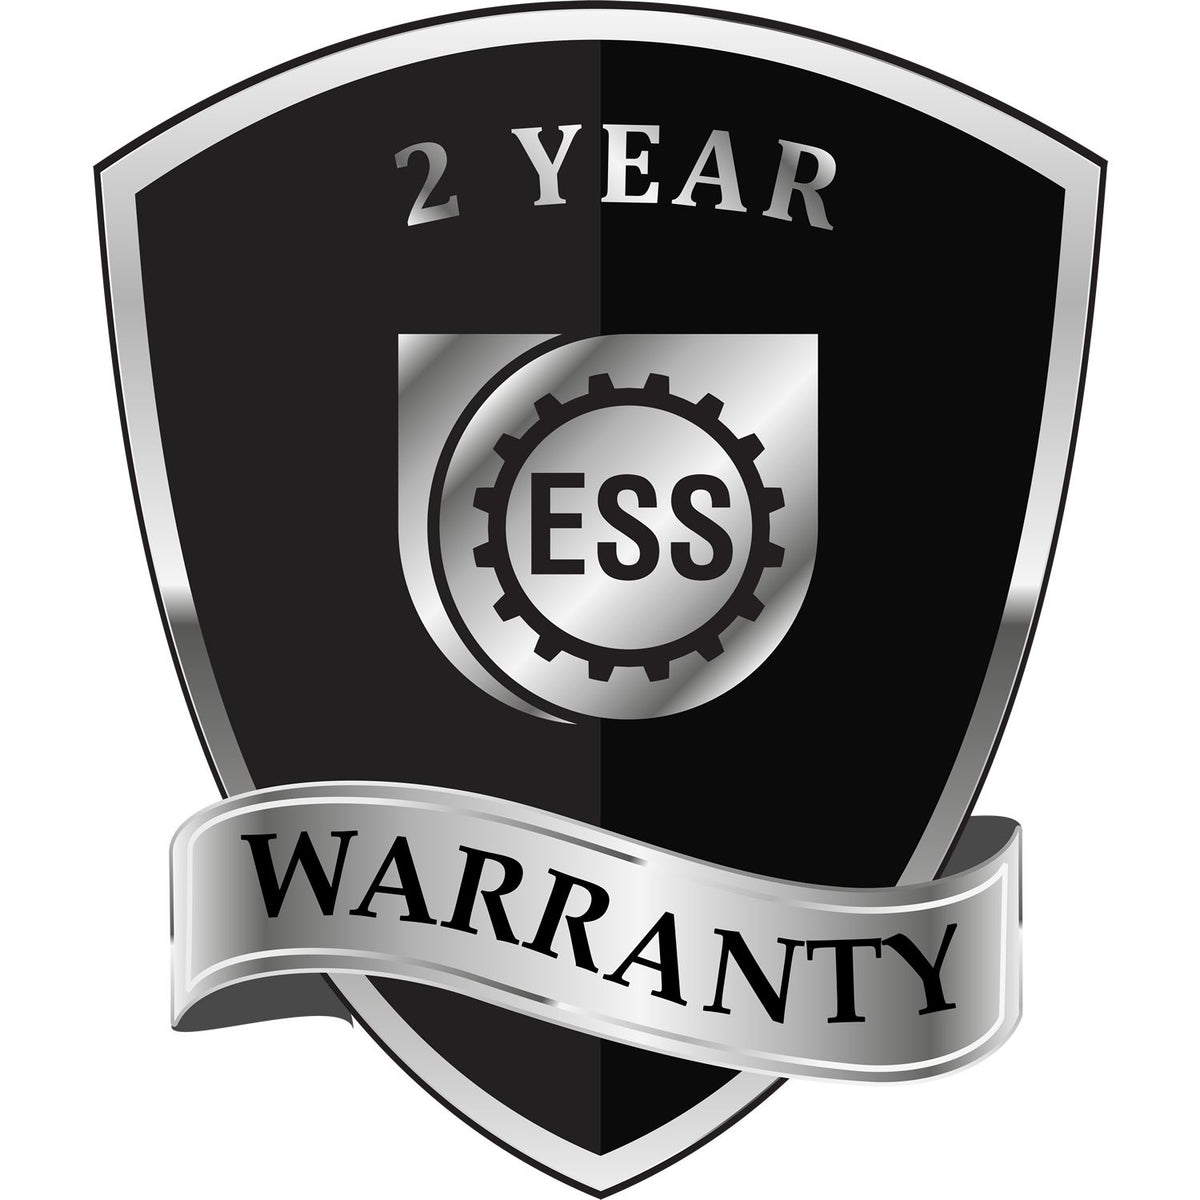 A black and silver badge or emblem showing warranty information for the Hybrid Mississippi Land Surveyor Seal